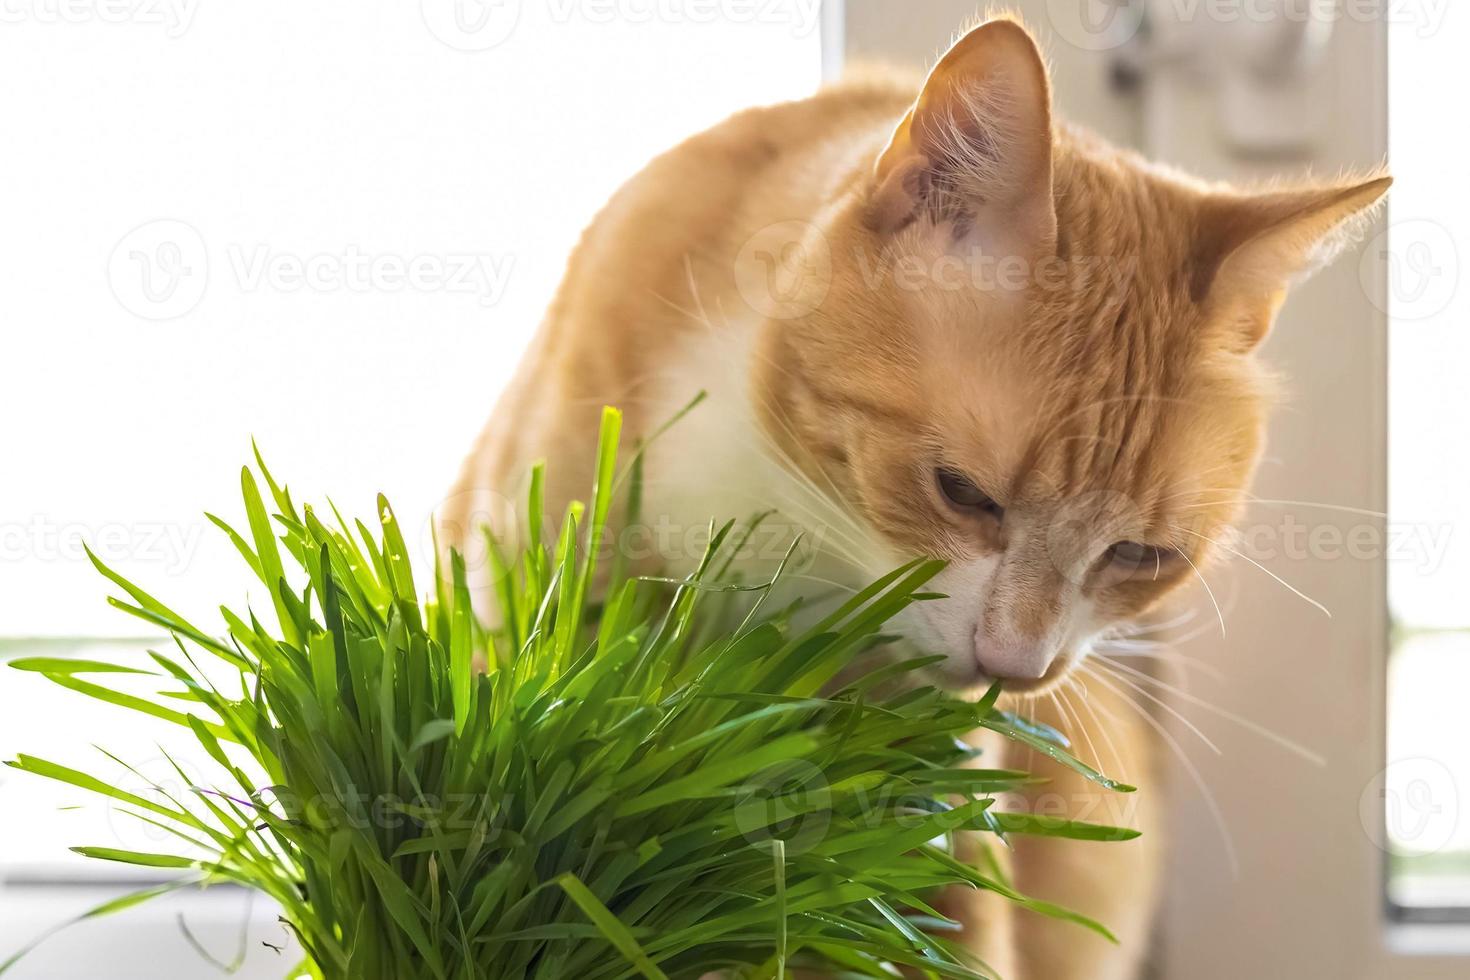 een rood kat eet groen gras groen sappig gras voor katten, gekiemd haver zijn nuttig voor katten. foto